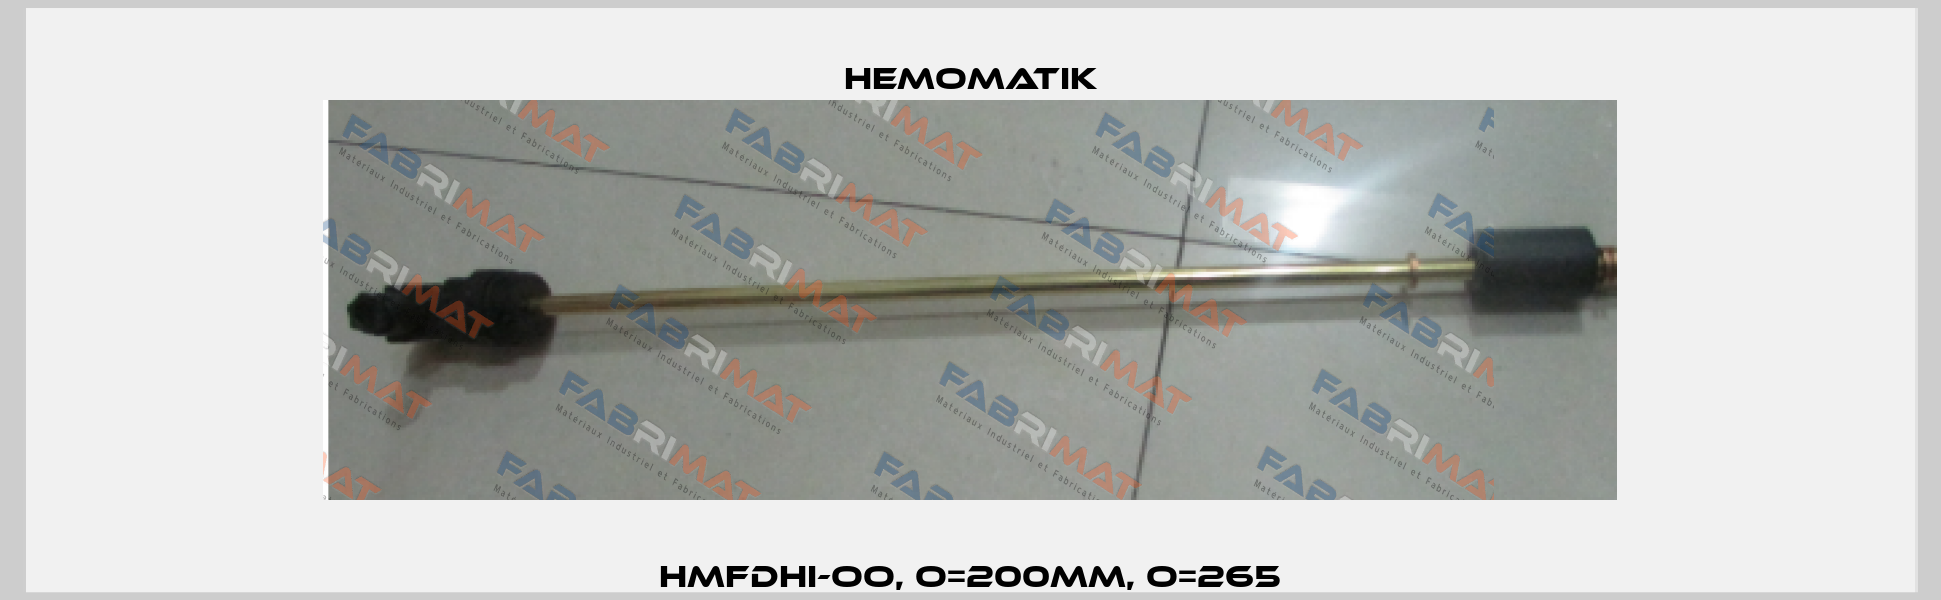 HMFDHI-OO, O=200mm, O=265 Hemomatik